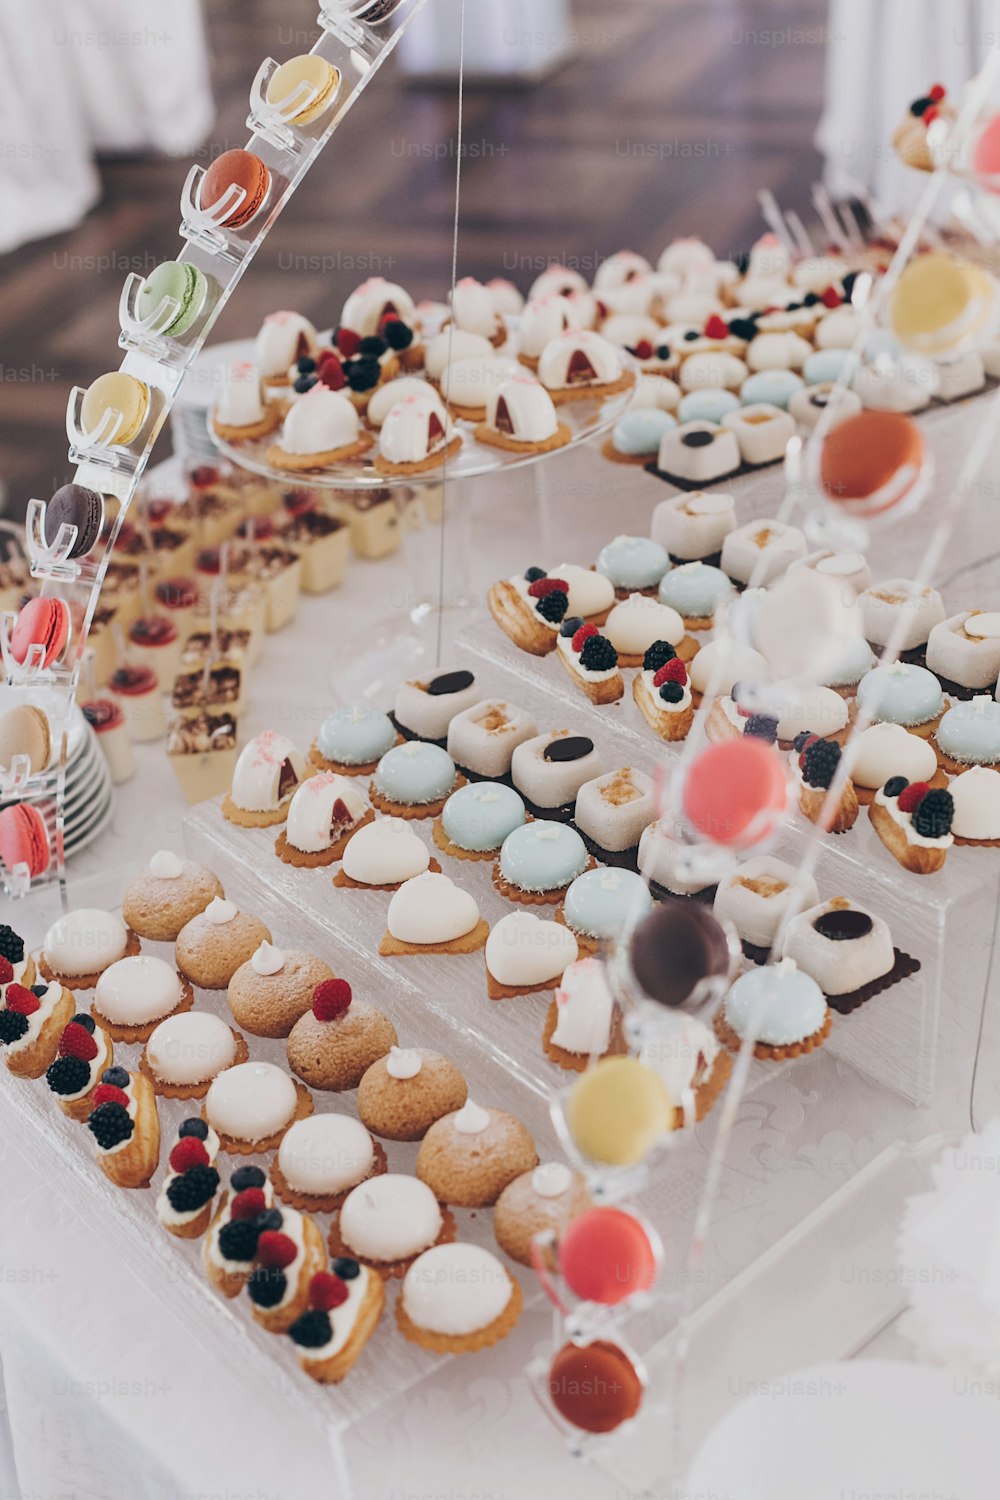 Délicieux desserts crémeux avec des fruits, des macarons, des gâteaux et des biscuits sur la table lors de la réception de mariage au restaurant. Service traiteur de luxe. Bar à bonbons de mariage.